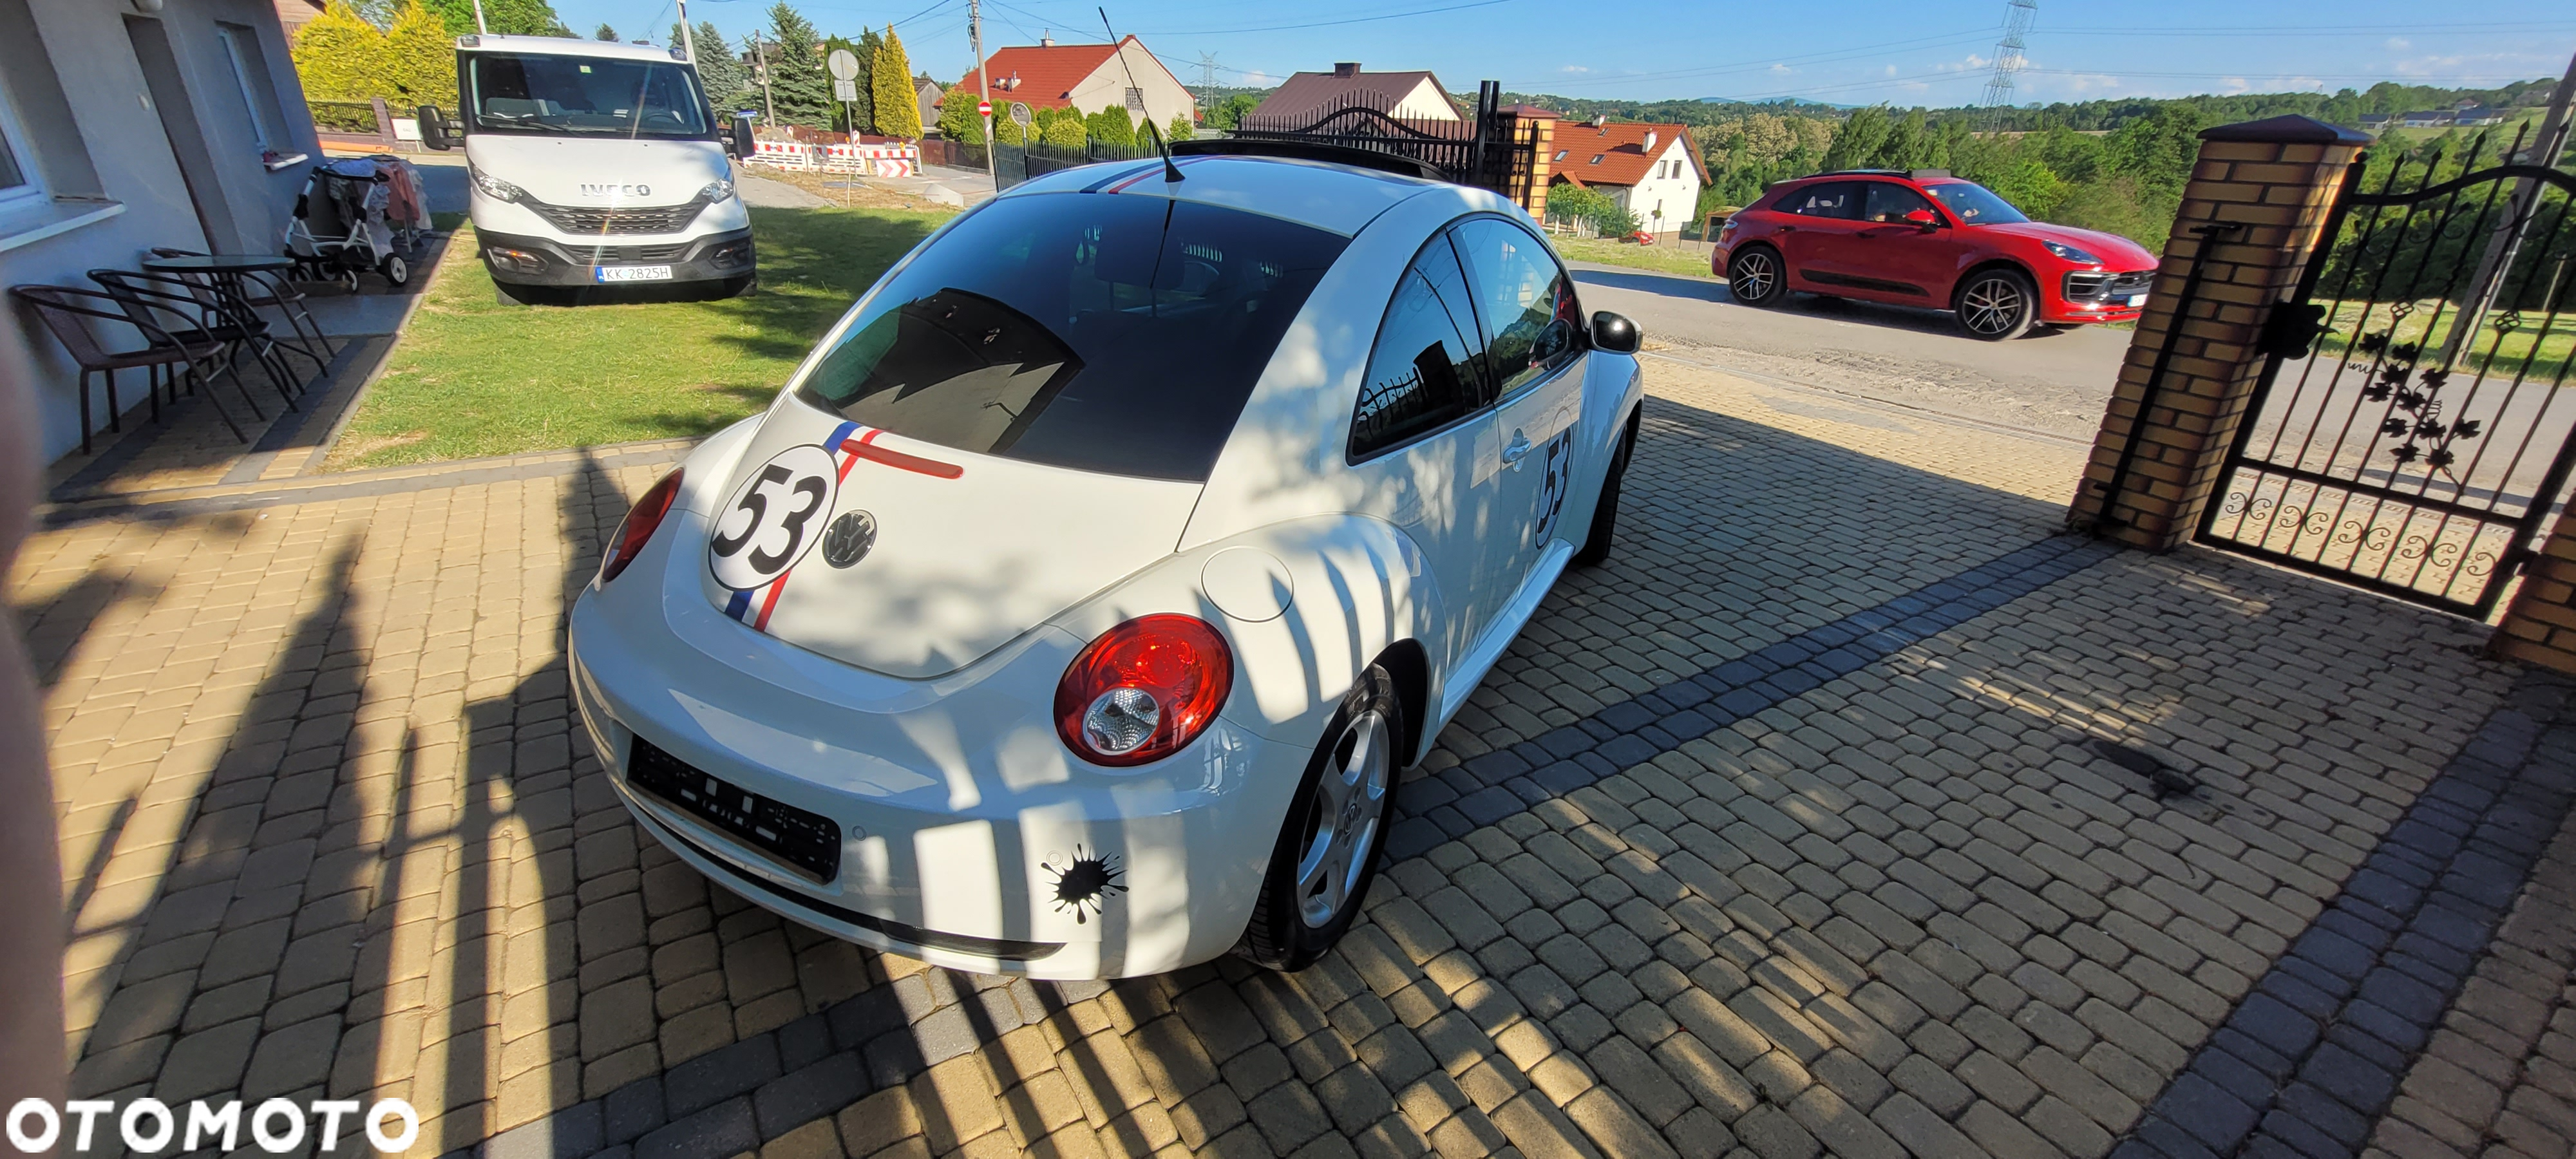 Volkswagen New Beetle - 8